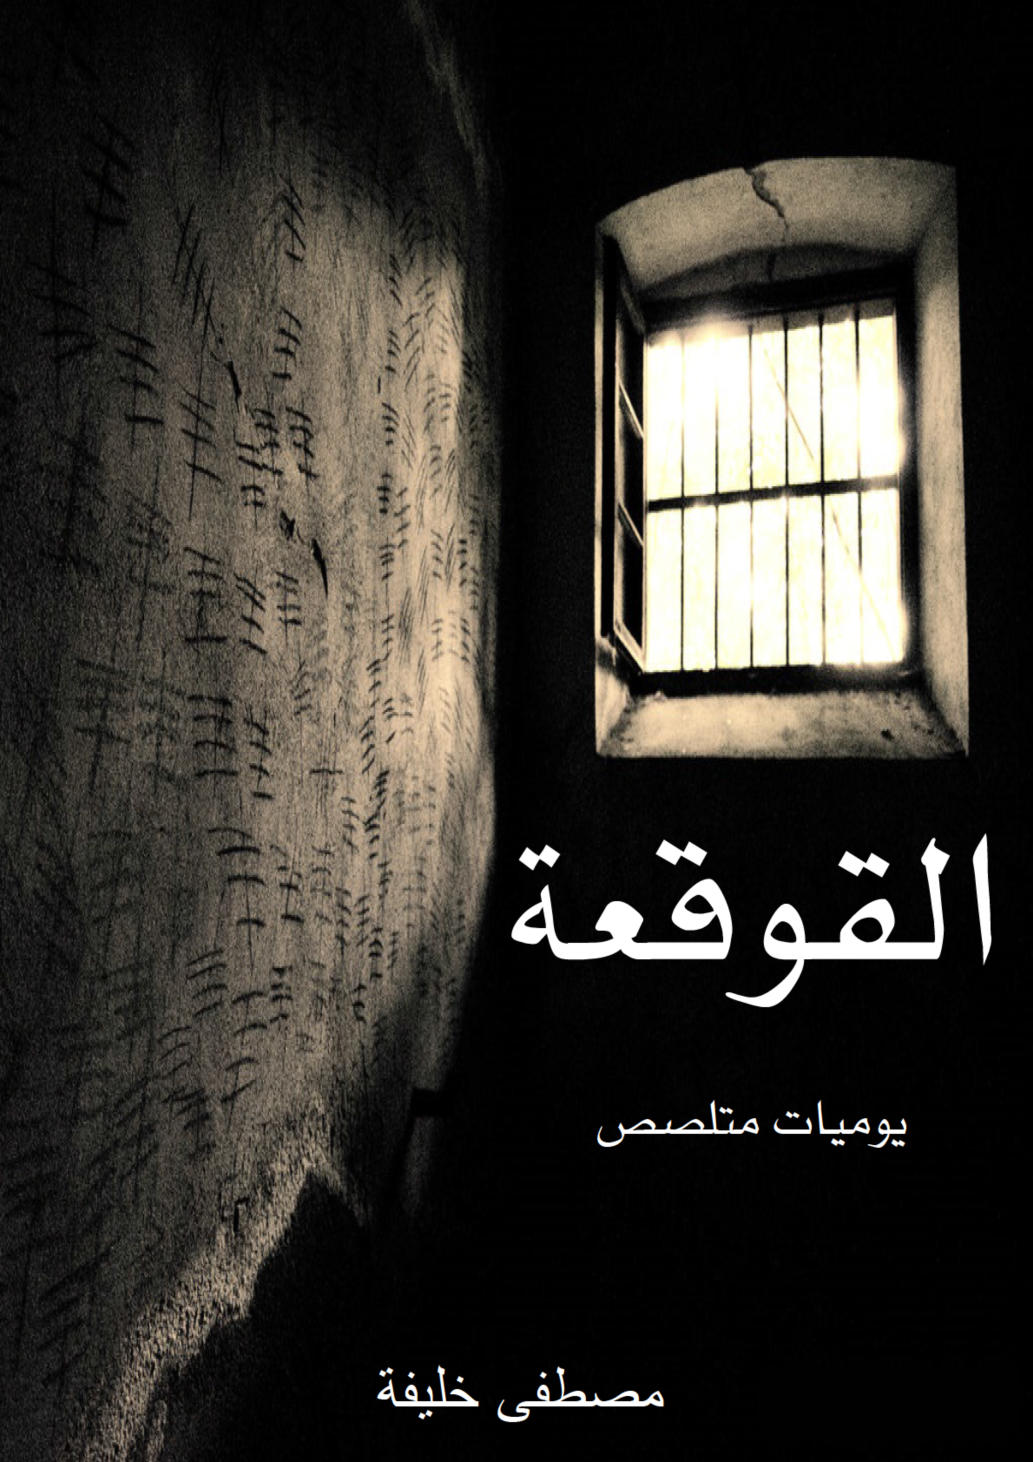 غلاف كتاب باللغة العربية